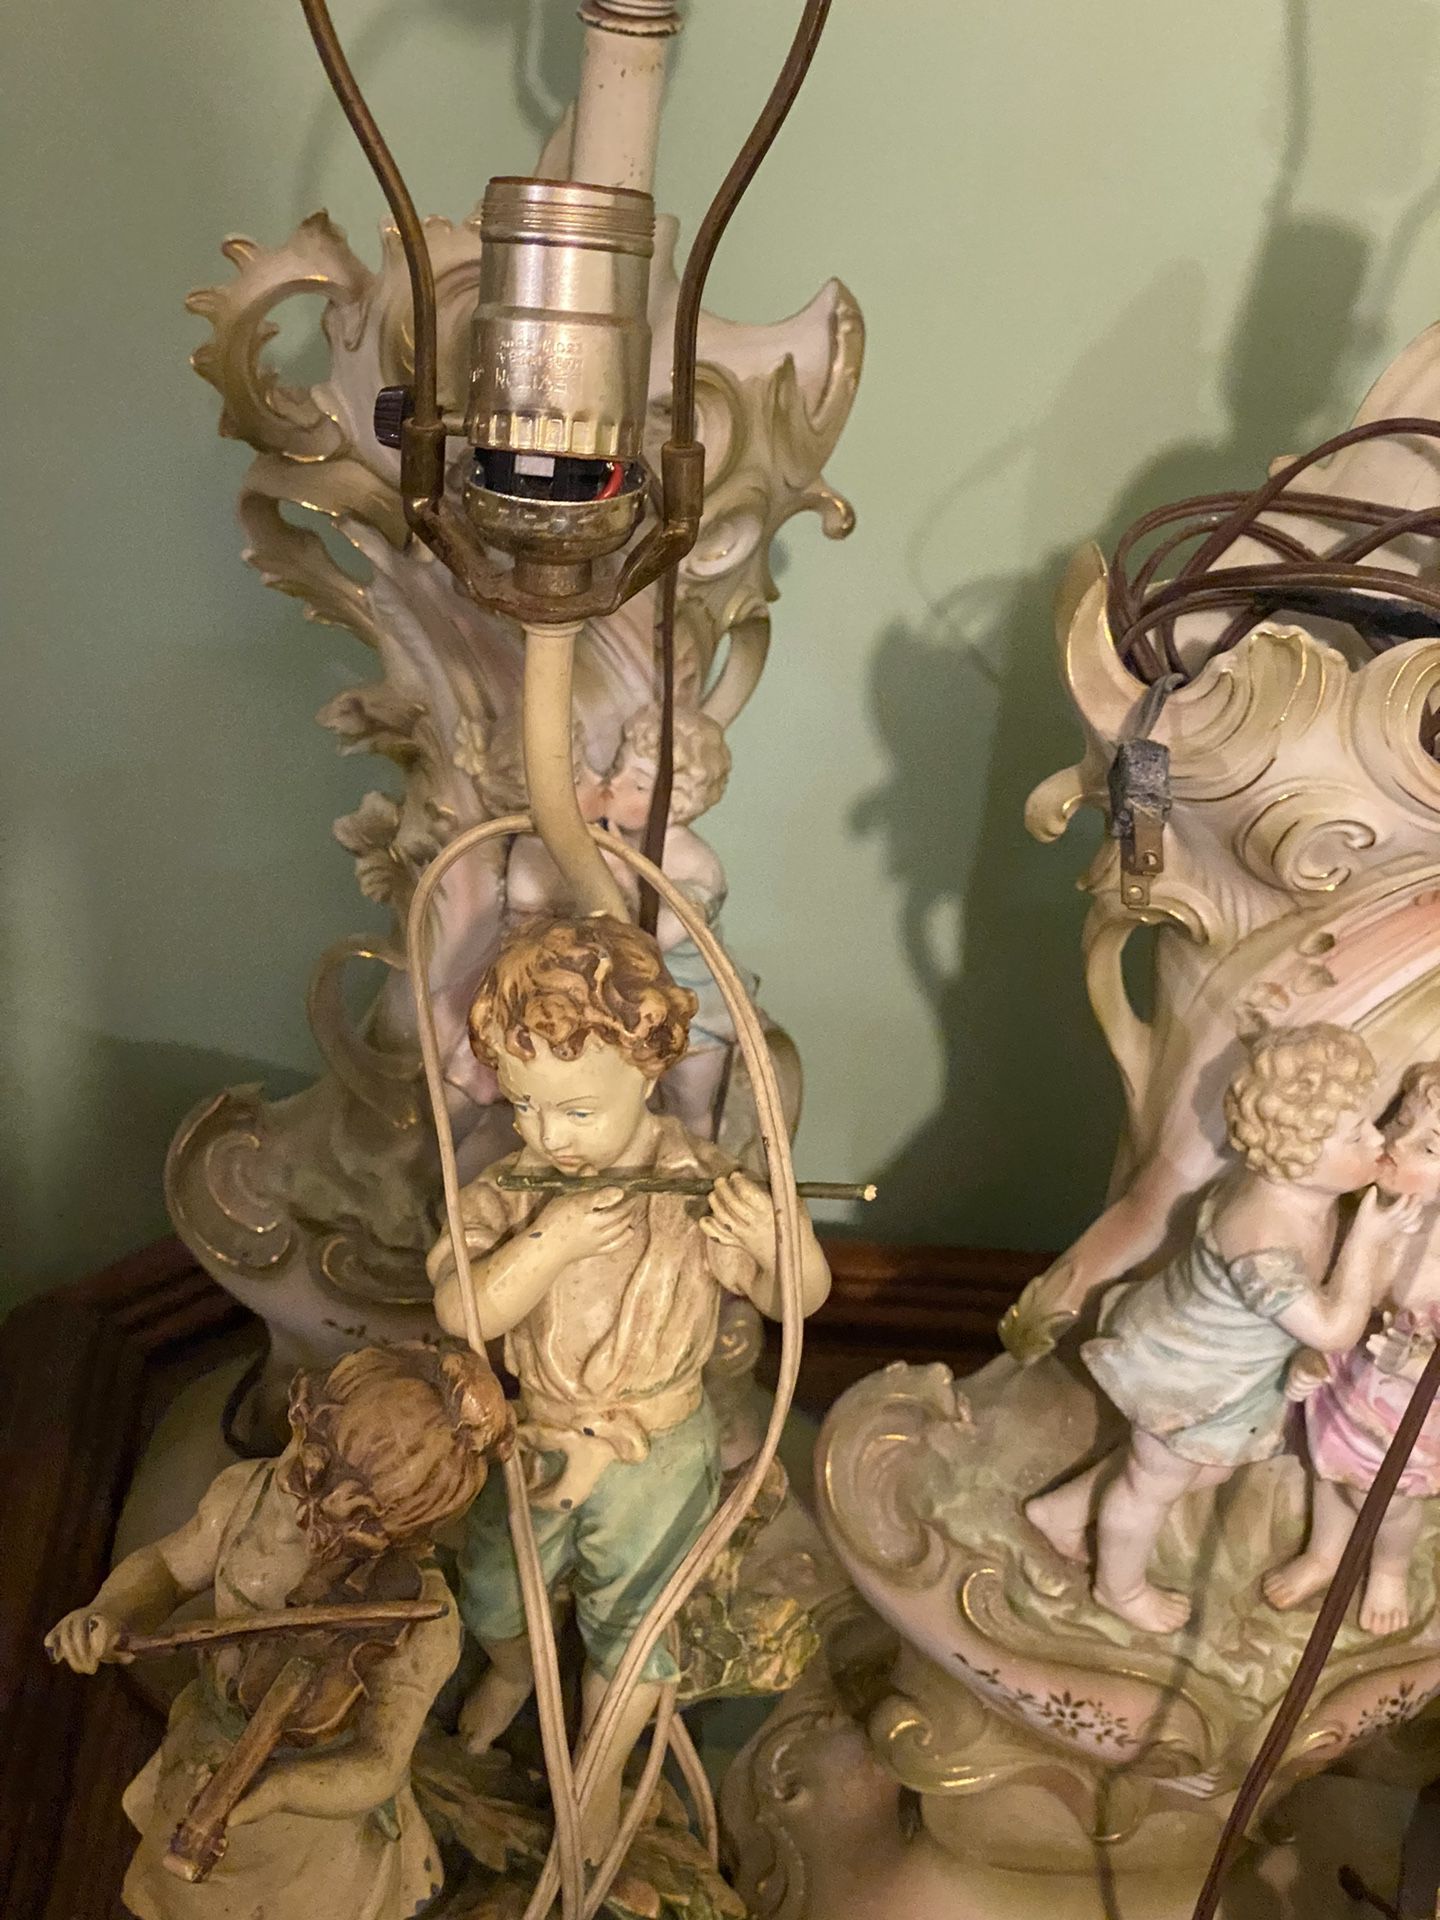 Vintage figurine lamps